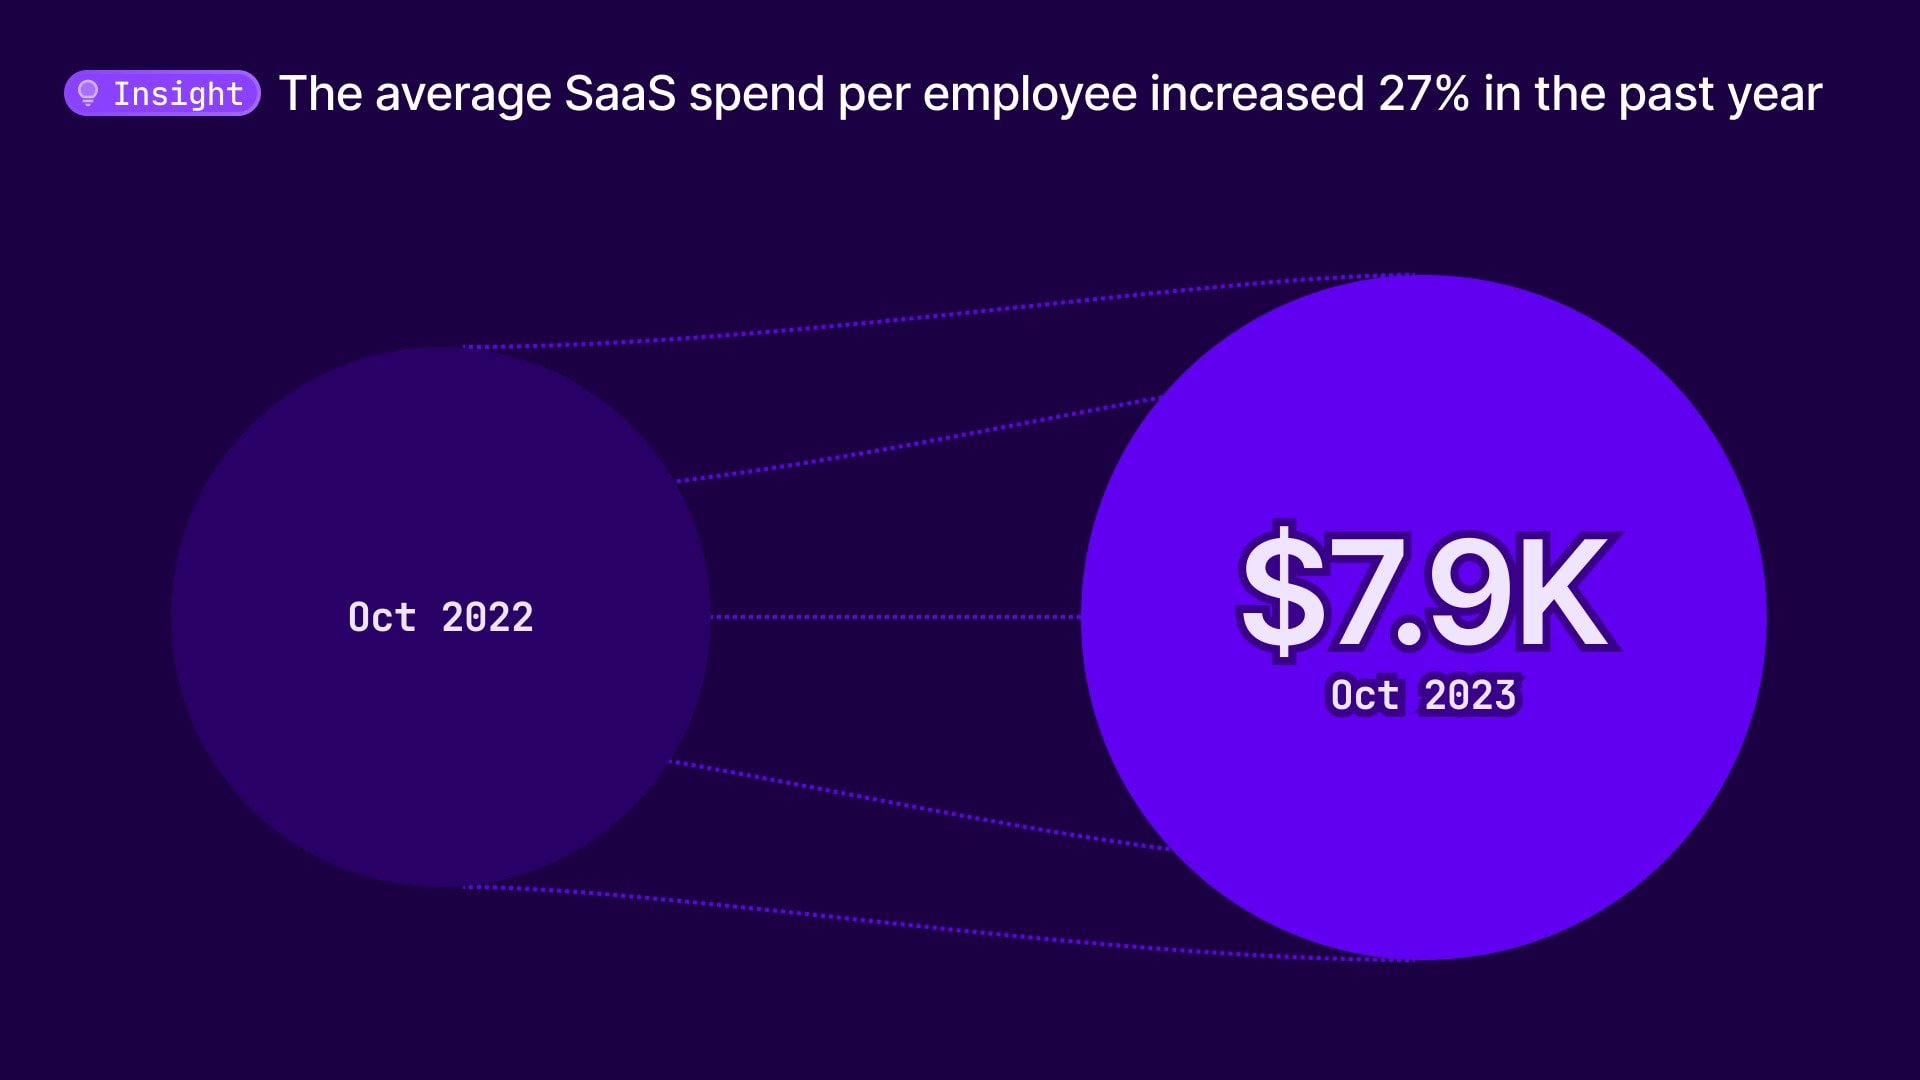 SaaS spend per employee has increased